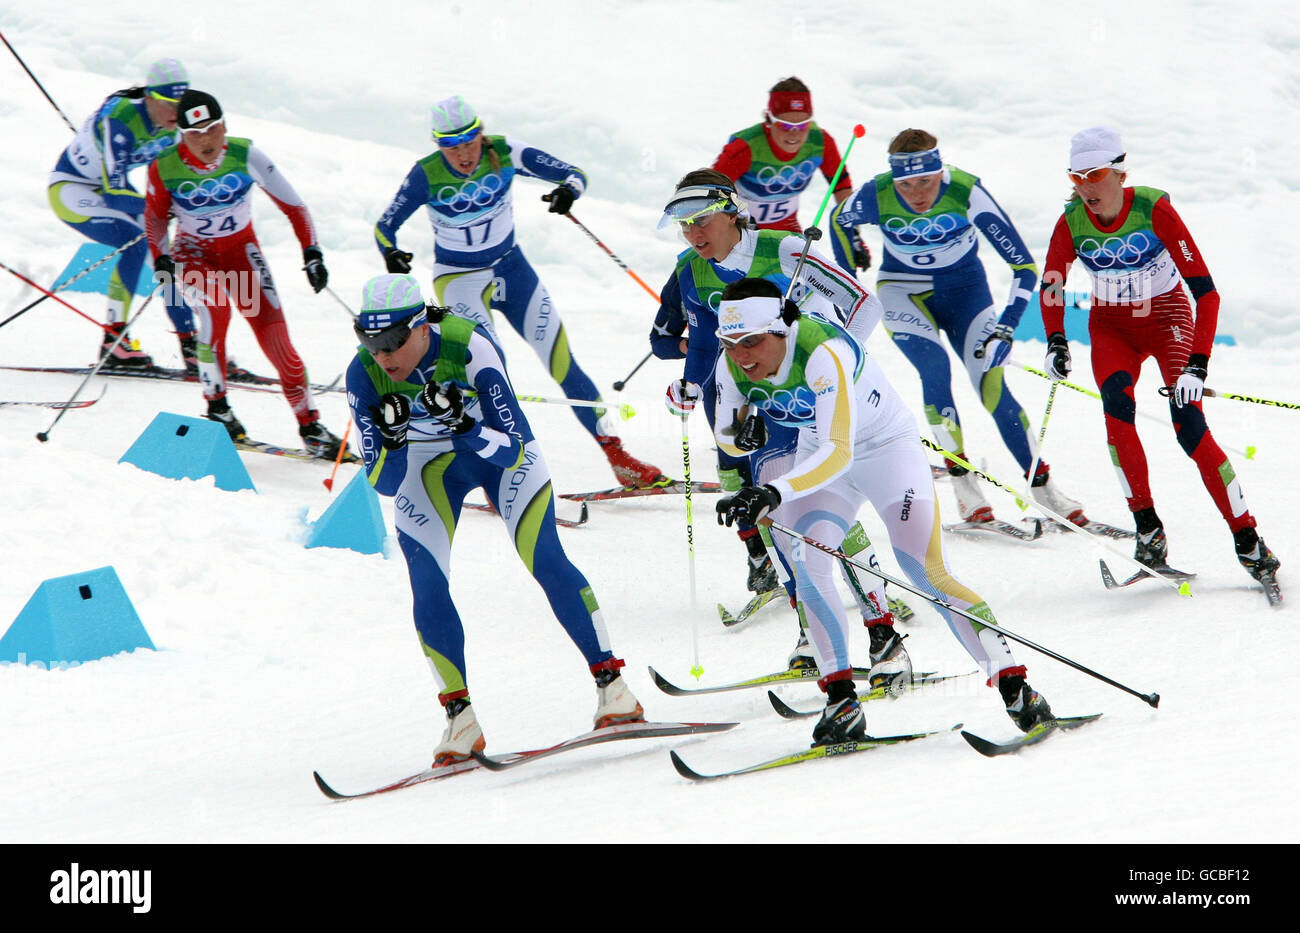 Les concurrents participent à la course de ski de fond de 30 km au programme Mass Start Classic du parc olympique de Whistler, à Whistler, au Canada. Banque D'Images